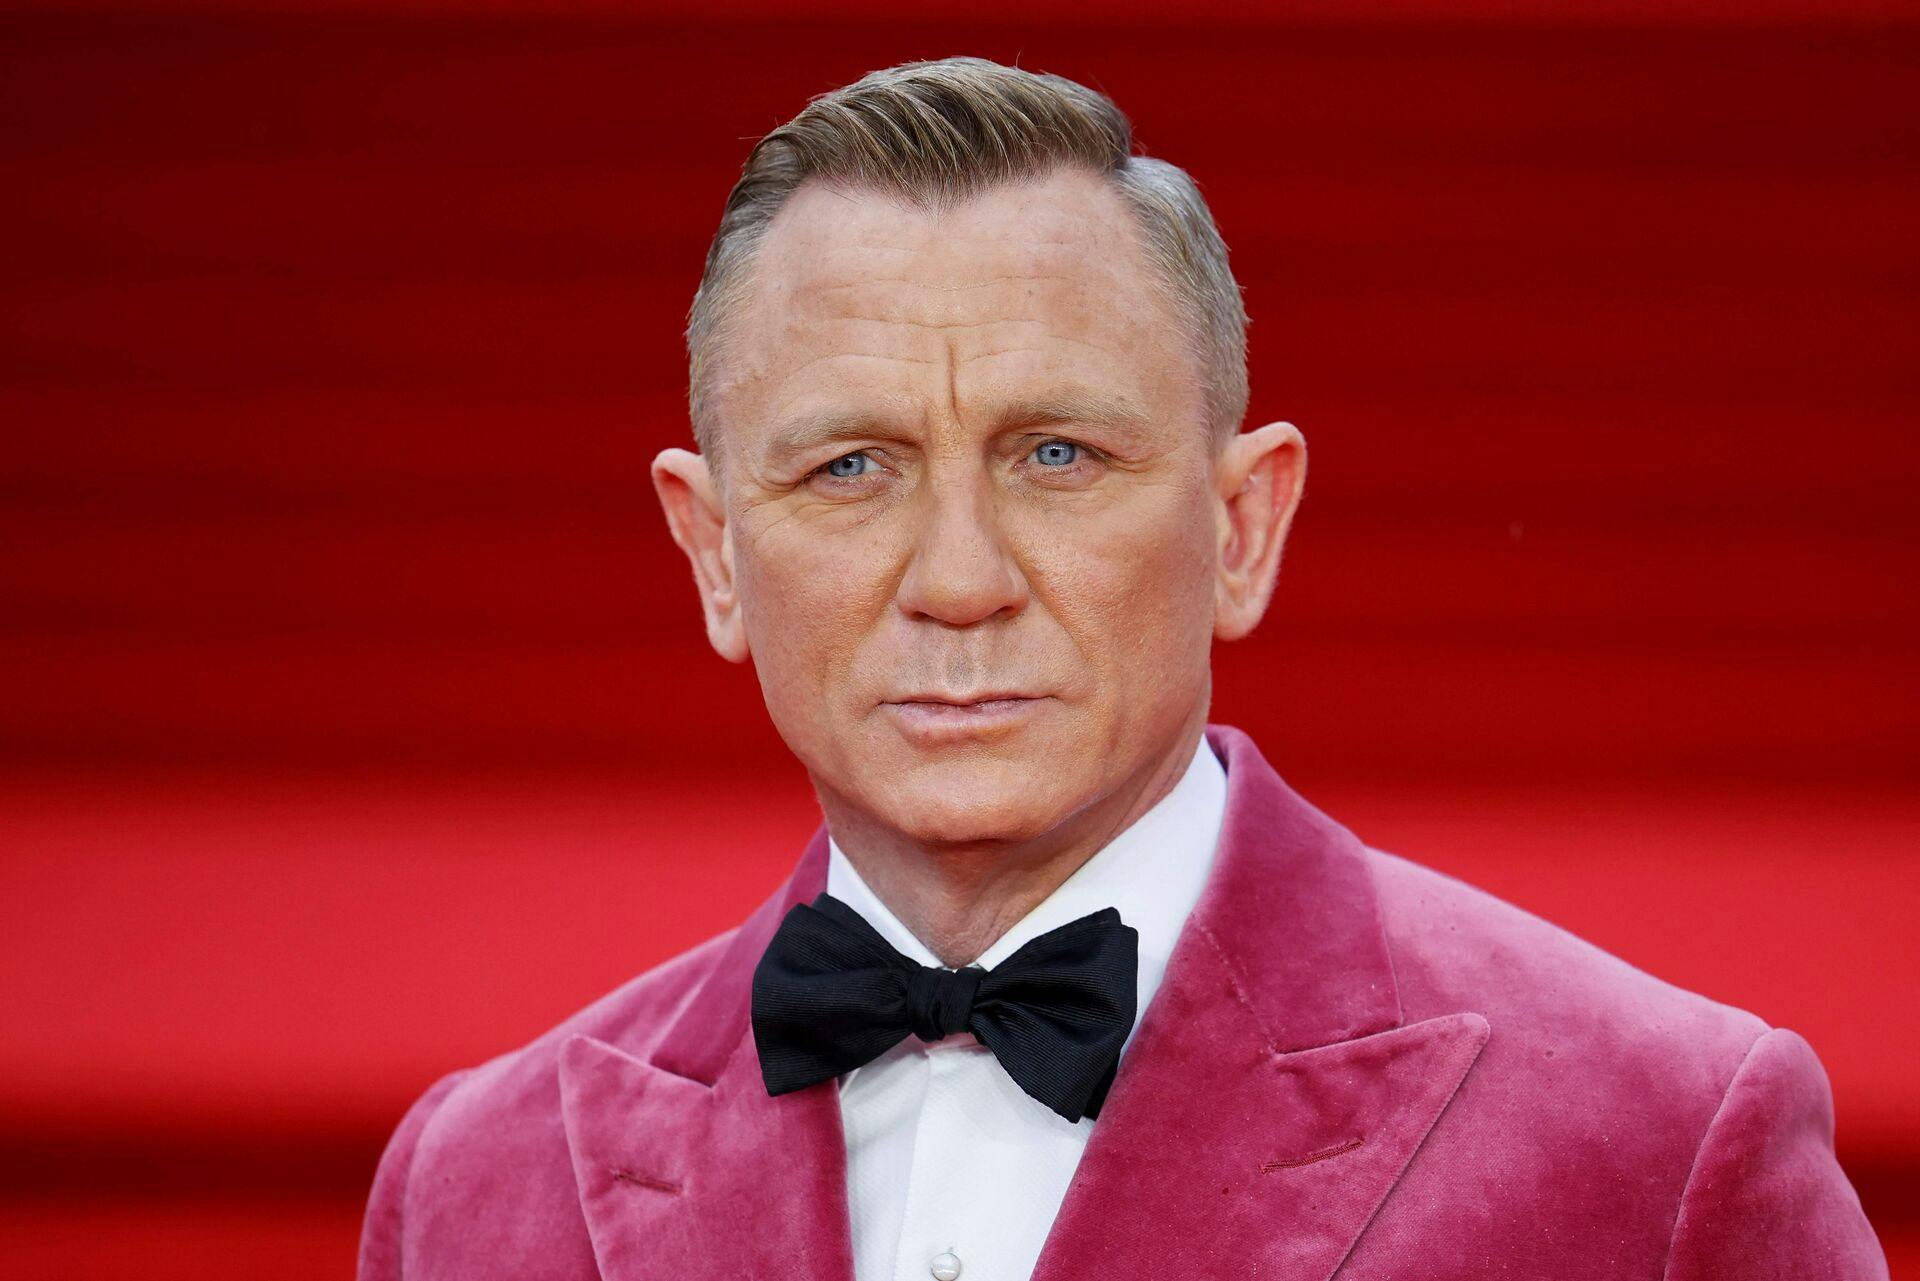 Det vides endnu ikke, hvem der skal overtage James Bond-rollen efter Daniel Craig.